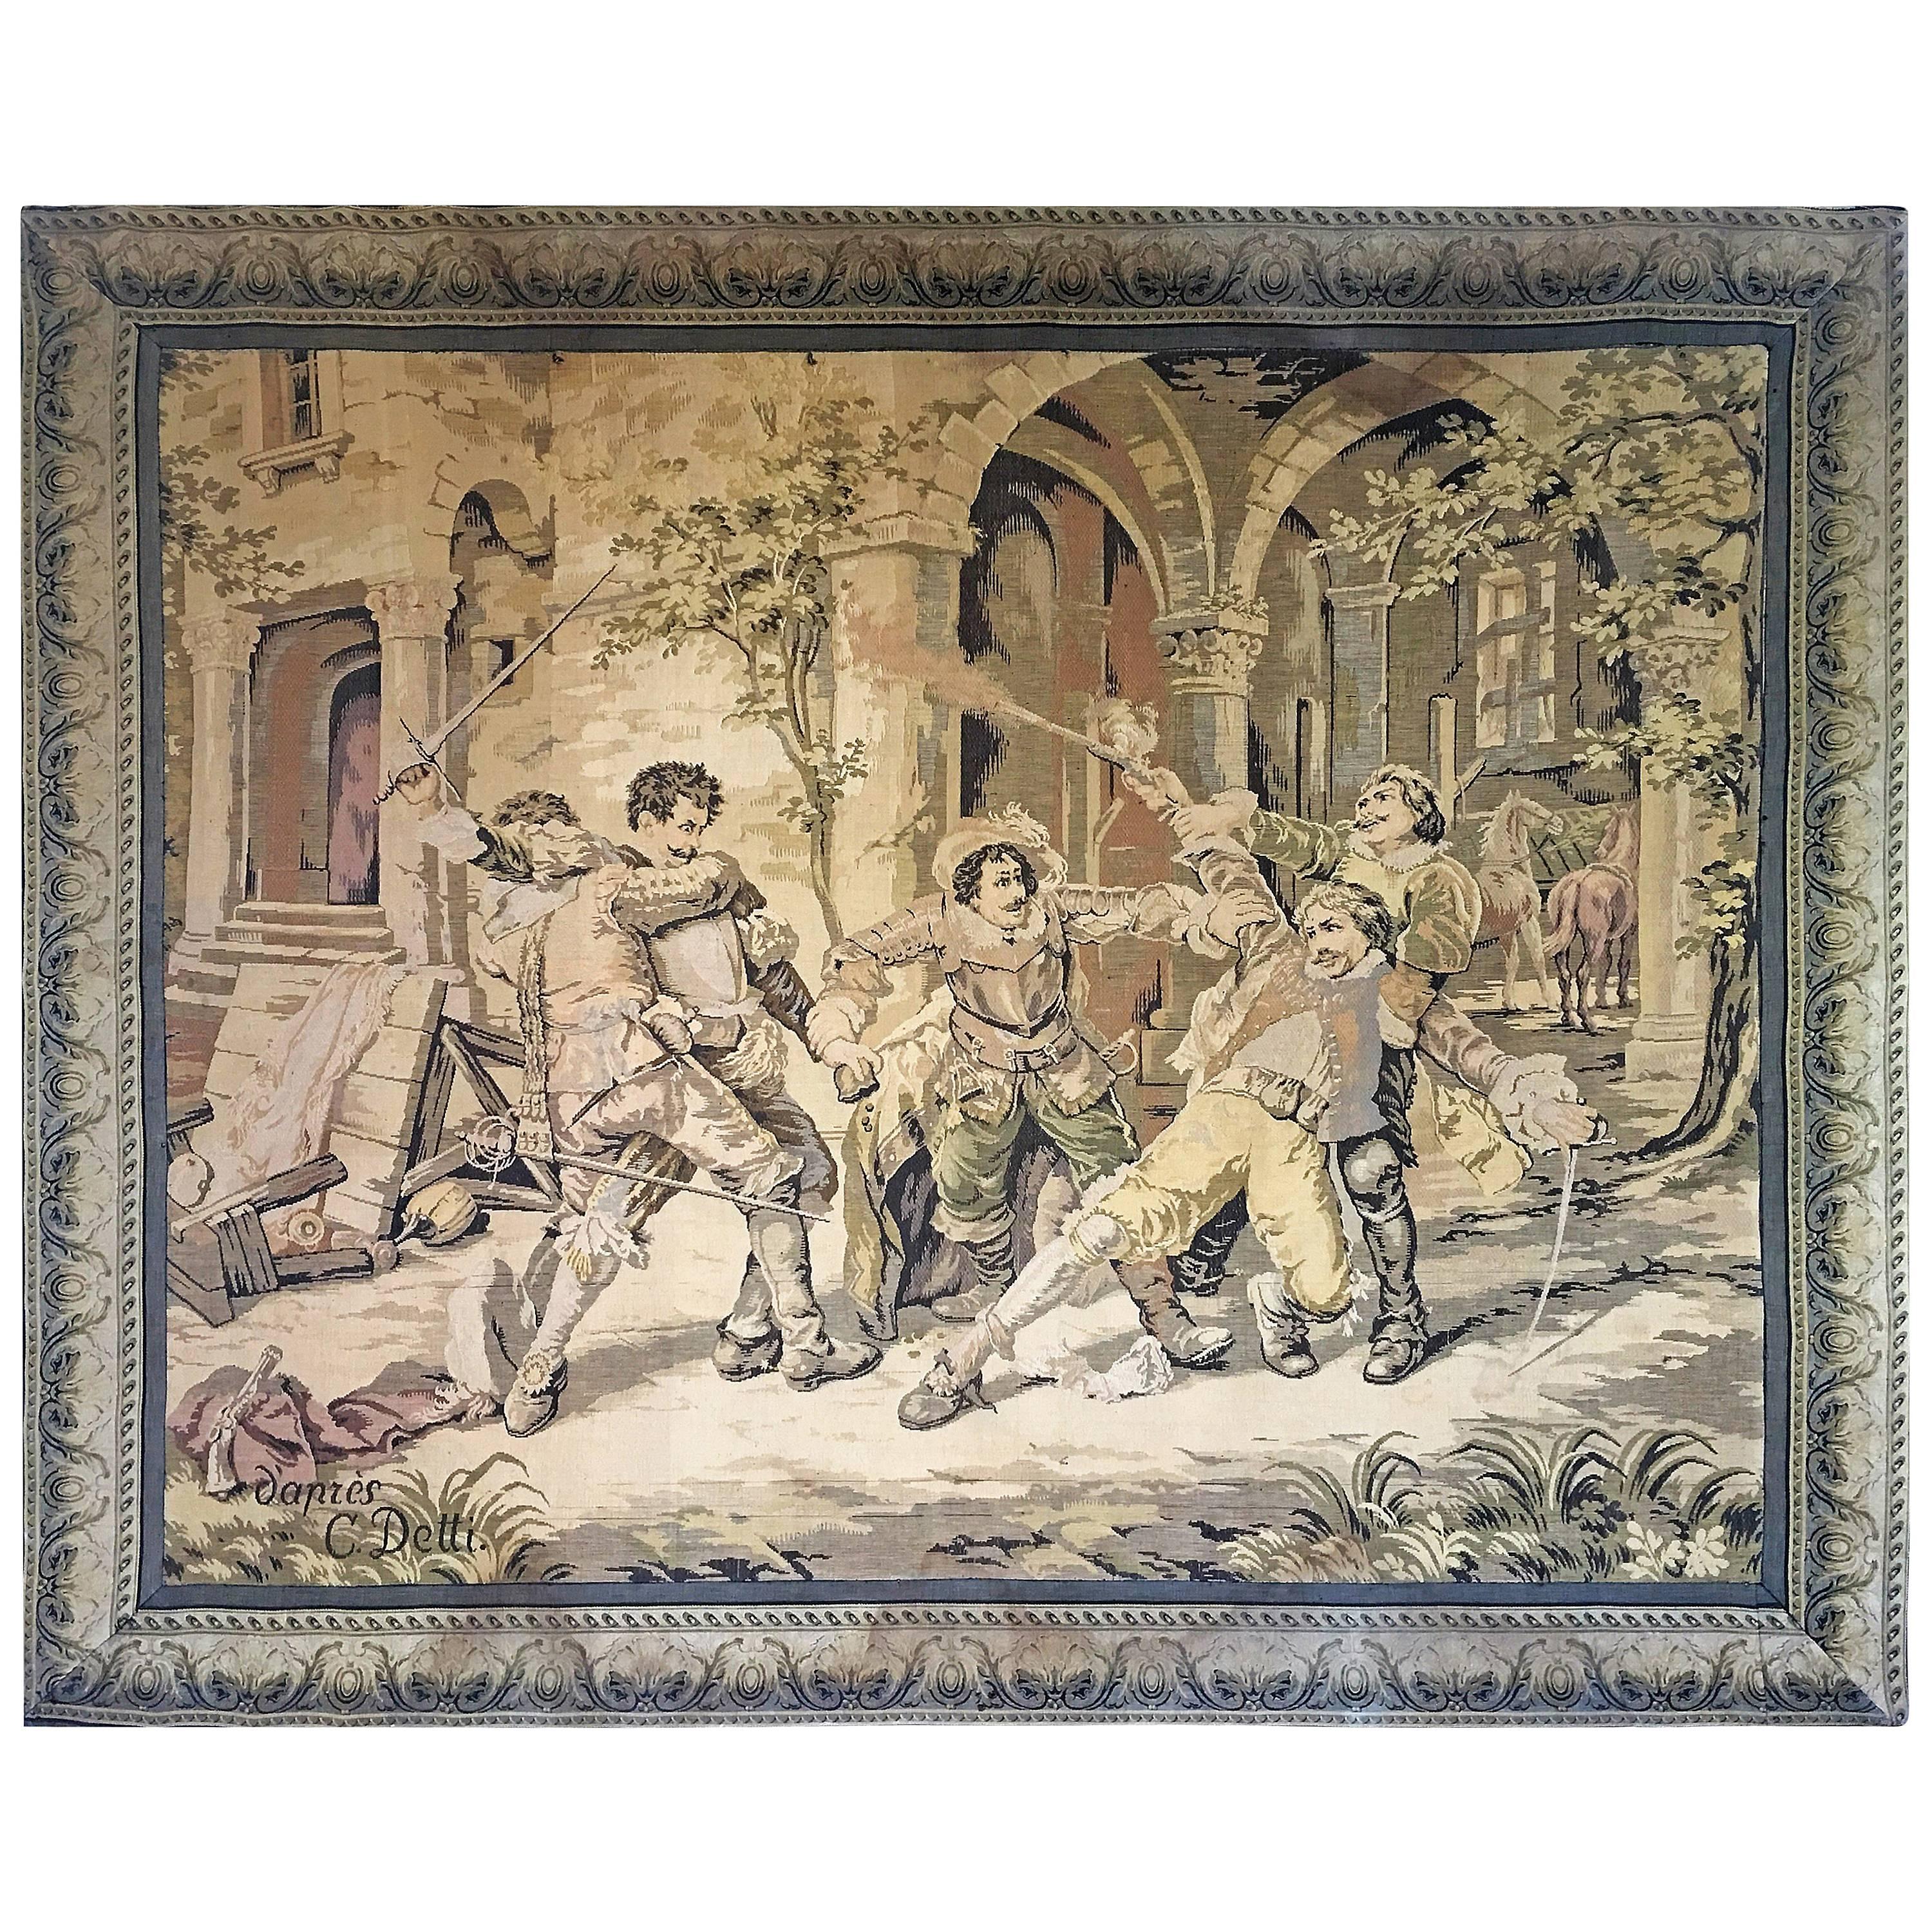 Großer antiker italienischer Wandteppich, um 1880. Auguste Detti, Cesare Auguste Detti